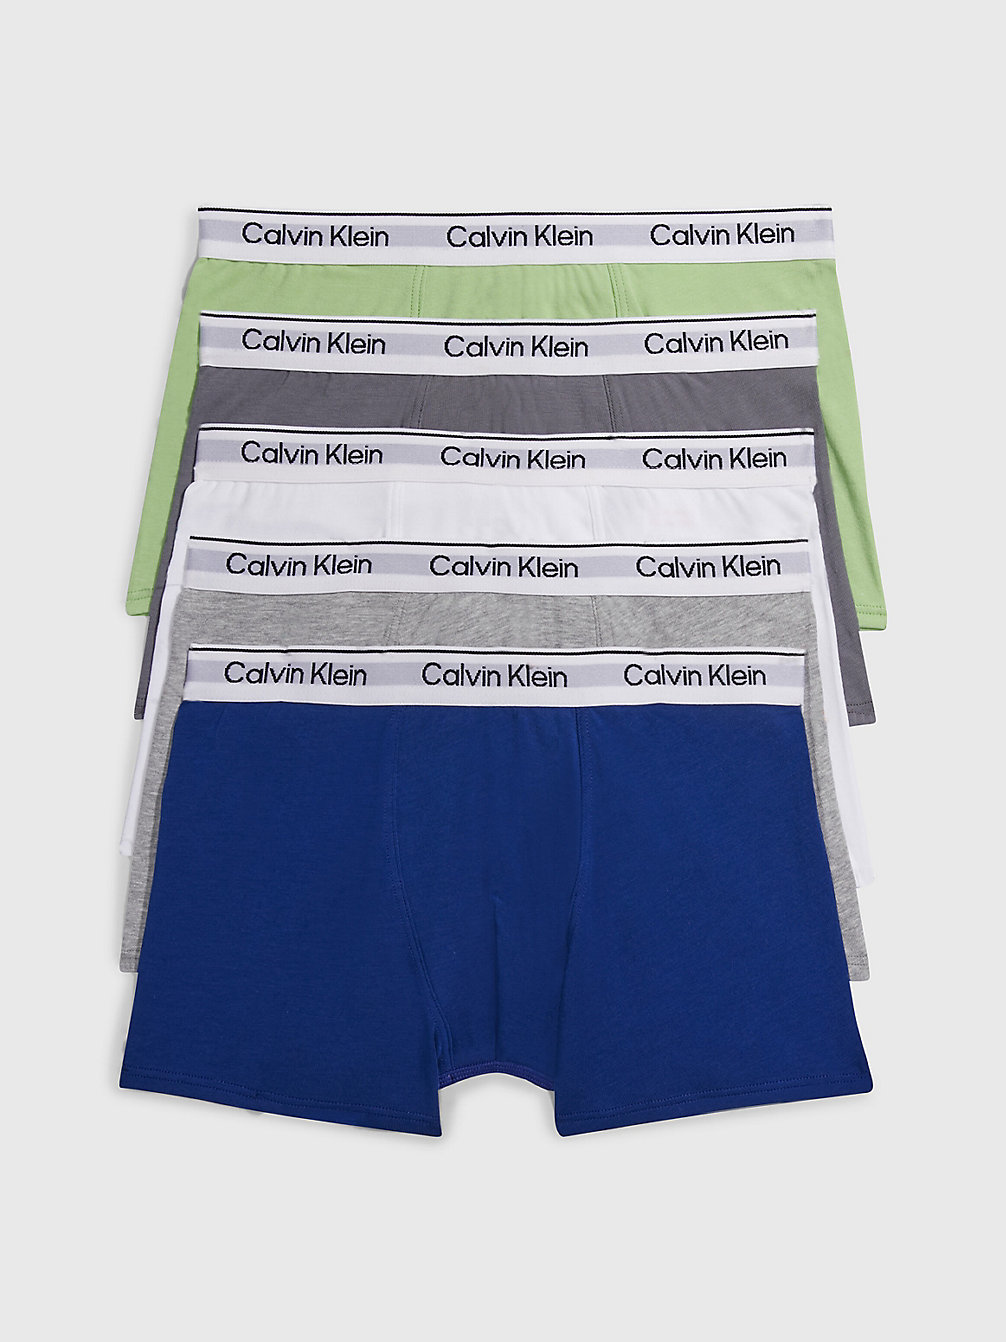 BBLUE/SPRINGF/ASFALTG/PWHITE/GHETHR Lot De 5 Shortys Pour Garçon - Modern Cotton undefined garcons Calvin Klein